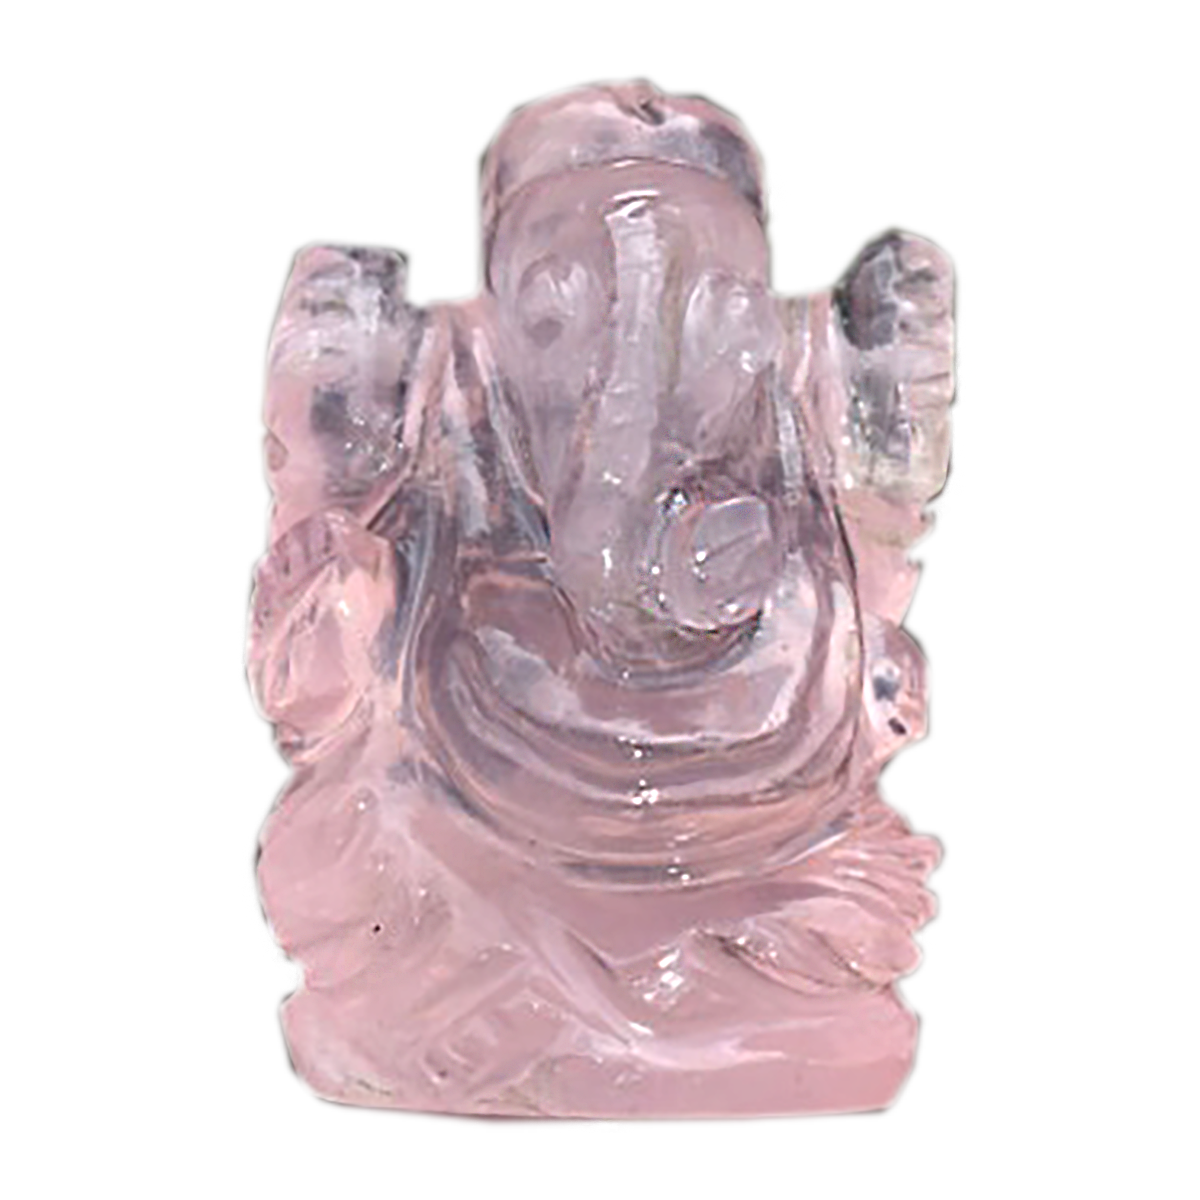 Natural Rose Quartz Ganesh Stone Size - 1 inch Reiki Healing Chakra Balancing Stone Gemstone Bala Crystal Pink Rose Quartz Pocket Ganesh Small Murthi Statue Gansh Chaturthi, Diwali Pooja